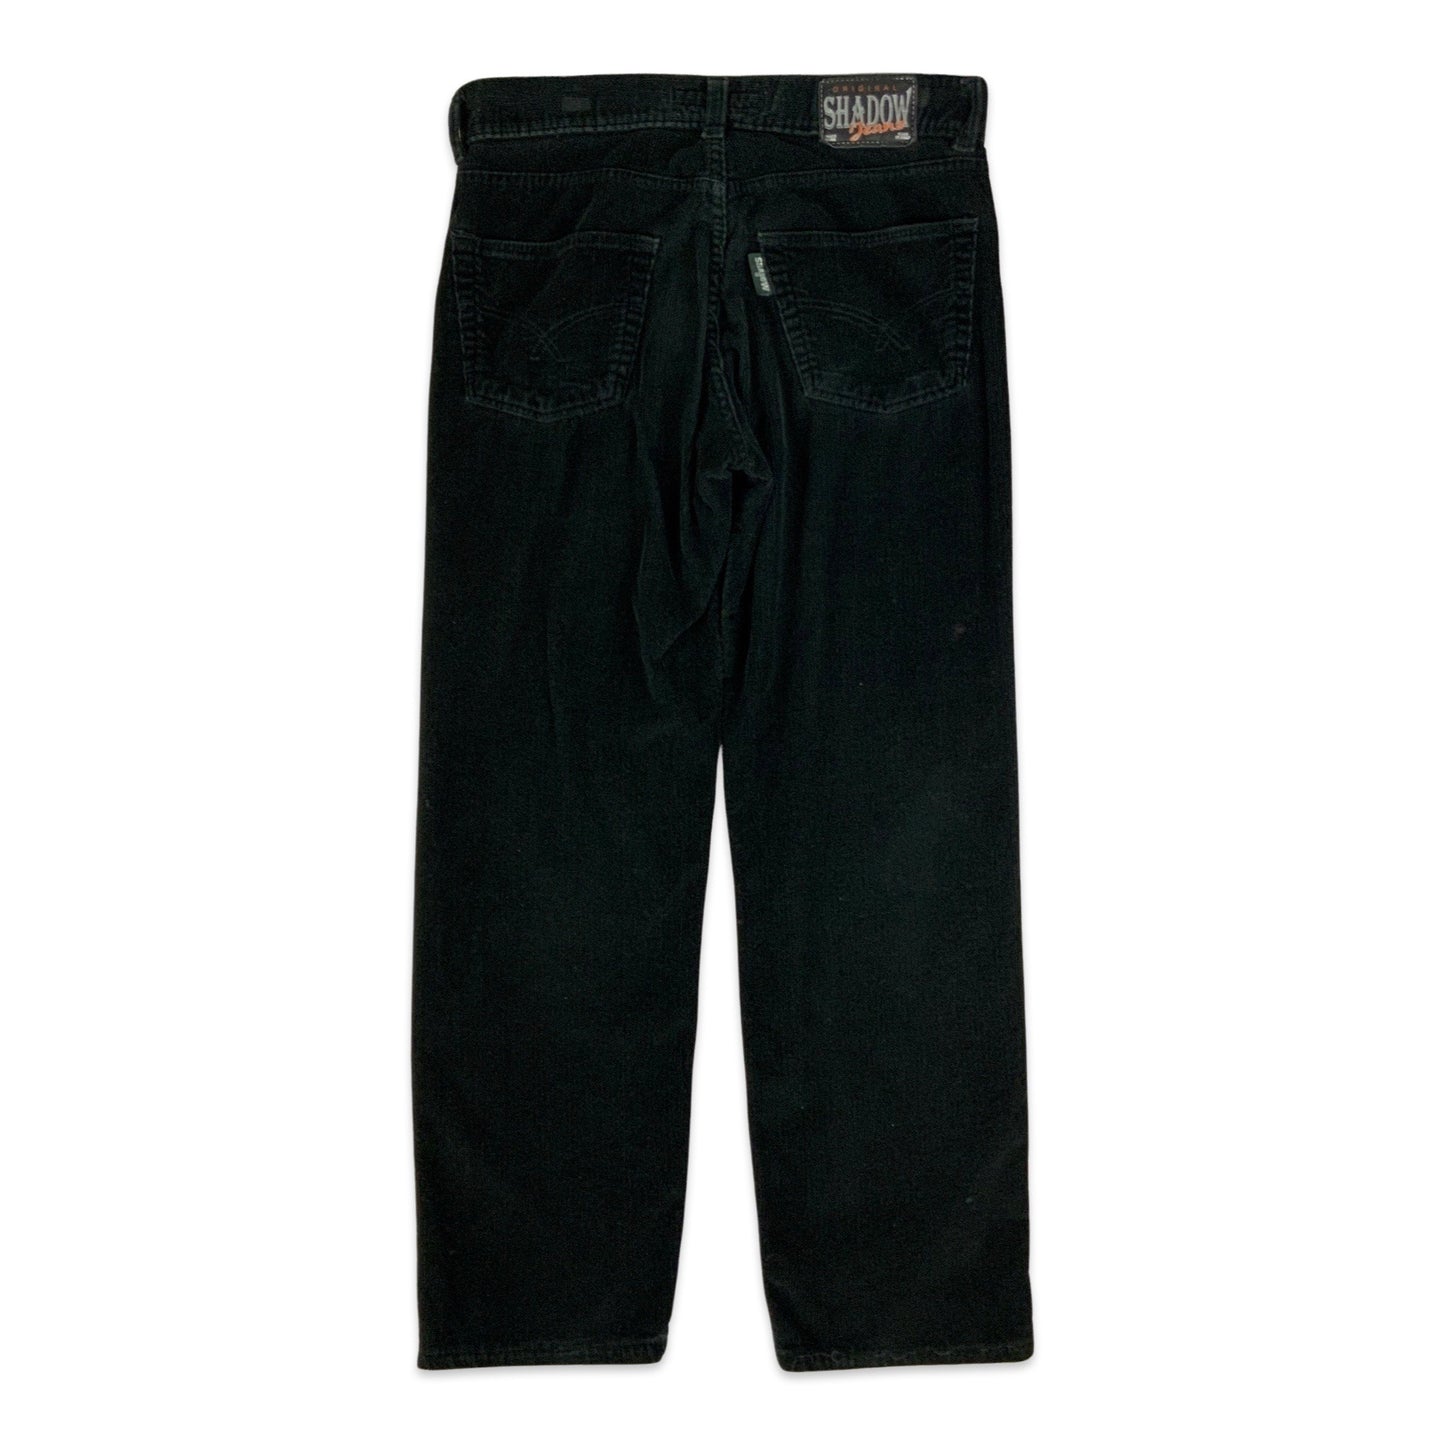 Vintage Black Corduroy Trousers 34W 30L